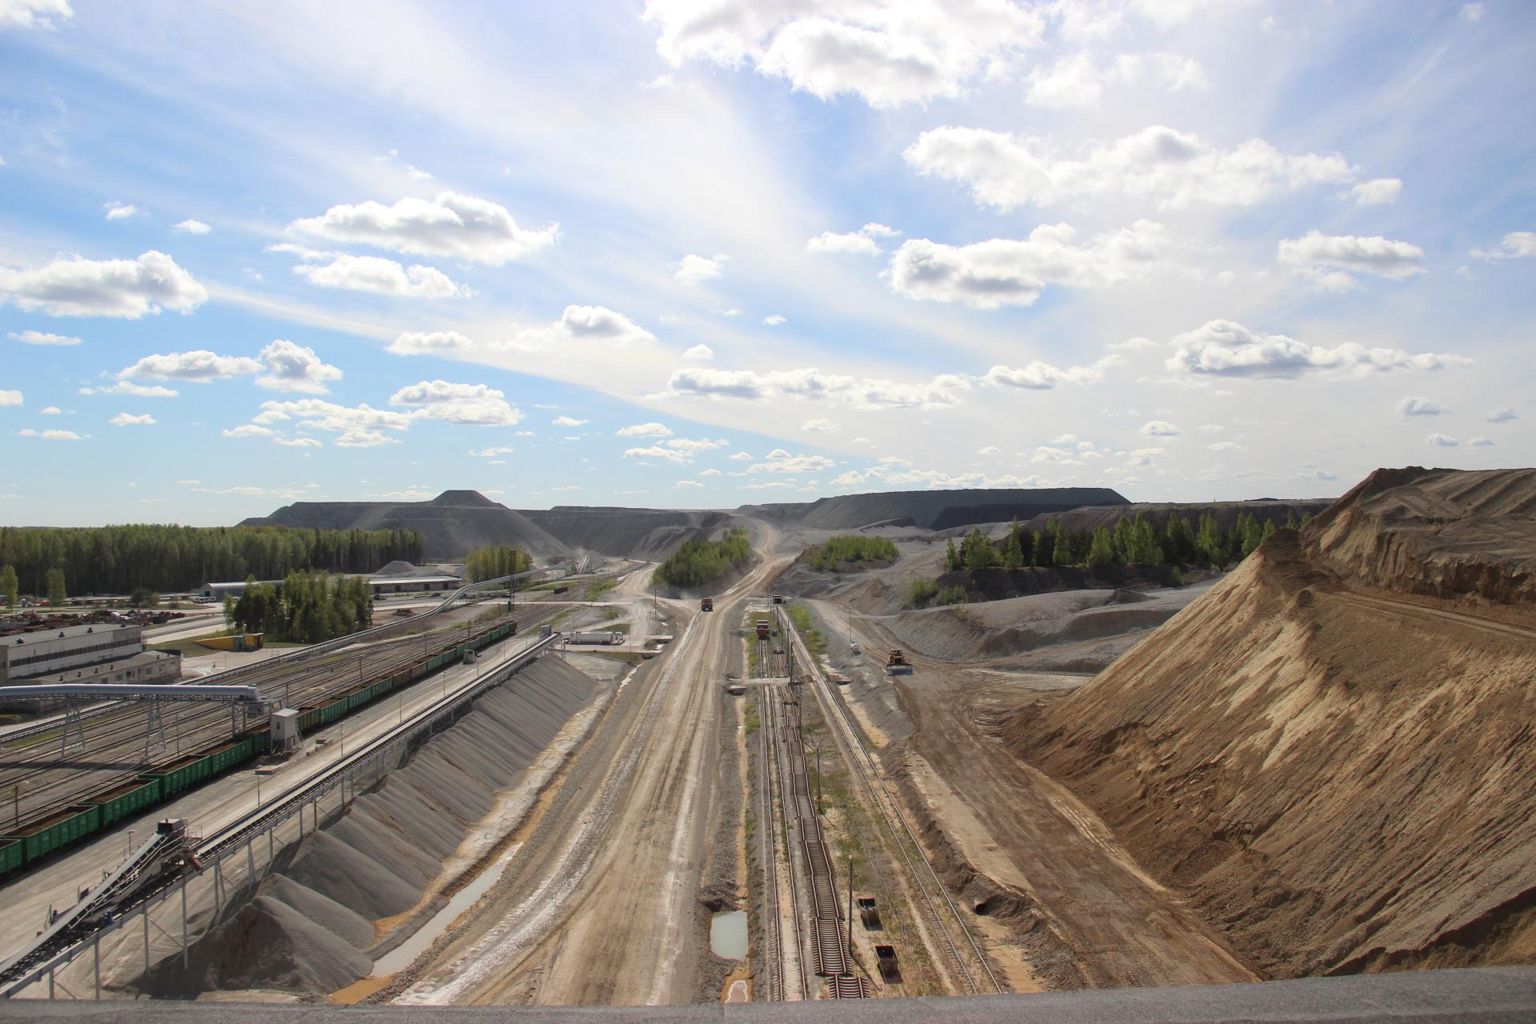 Estonia kaevanduse maapealne osa, paremal pool rikastusprotsessi läbinud põlevkivi, taamal lubjakivimägi.